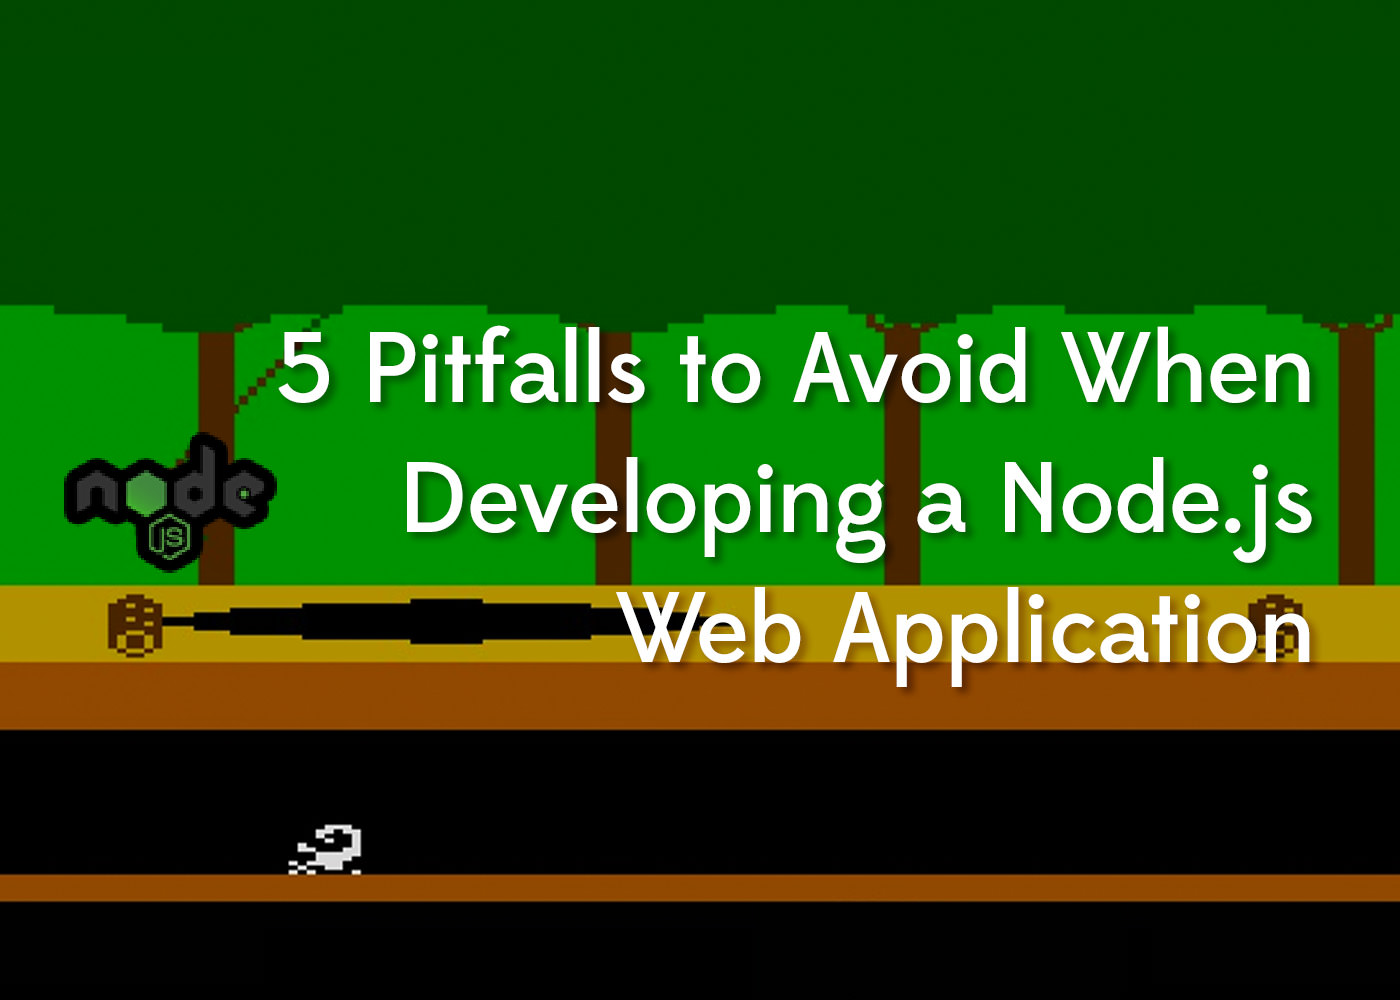 5 Cạm bẫy cần tránh khi xây dựng ứng dụng web Node.js